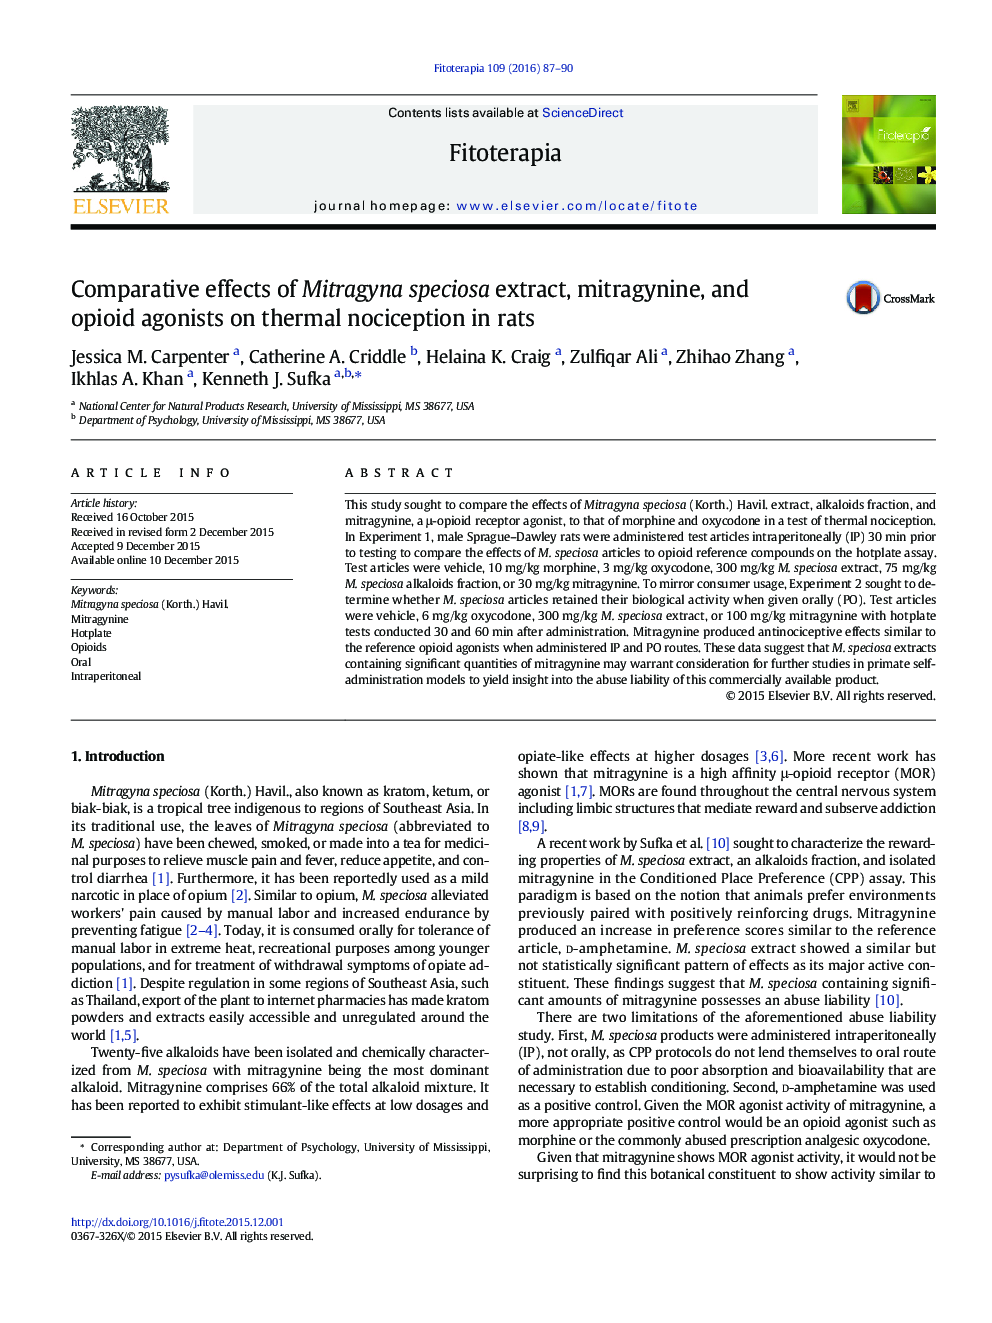 اثرات تطبیقی عصاره Mitragyna speciosa، Mitragynine و آگونیست های اپيوئیدی بر روی ناسازگاری حرارتی در موش صحرايی